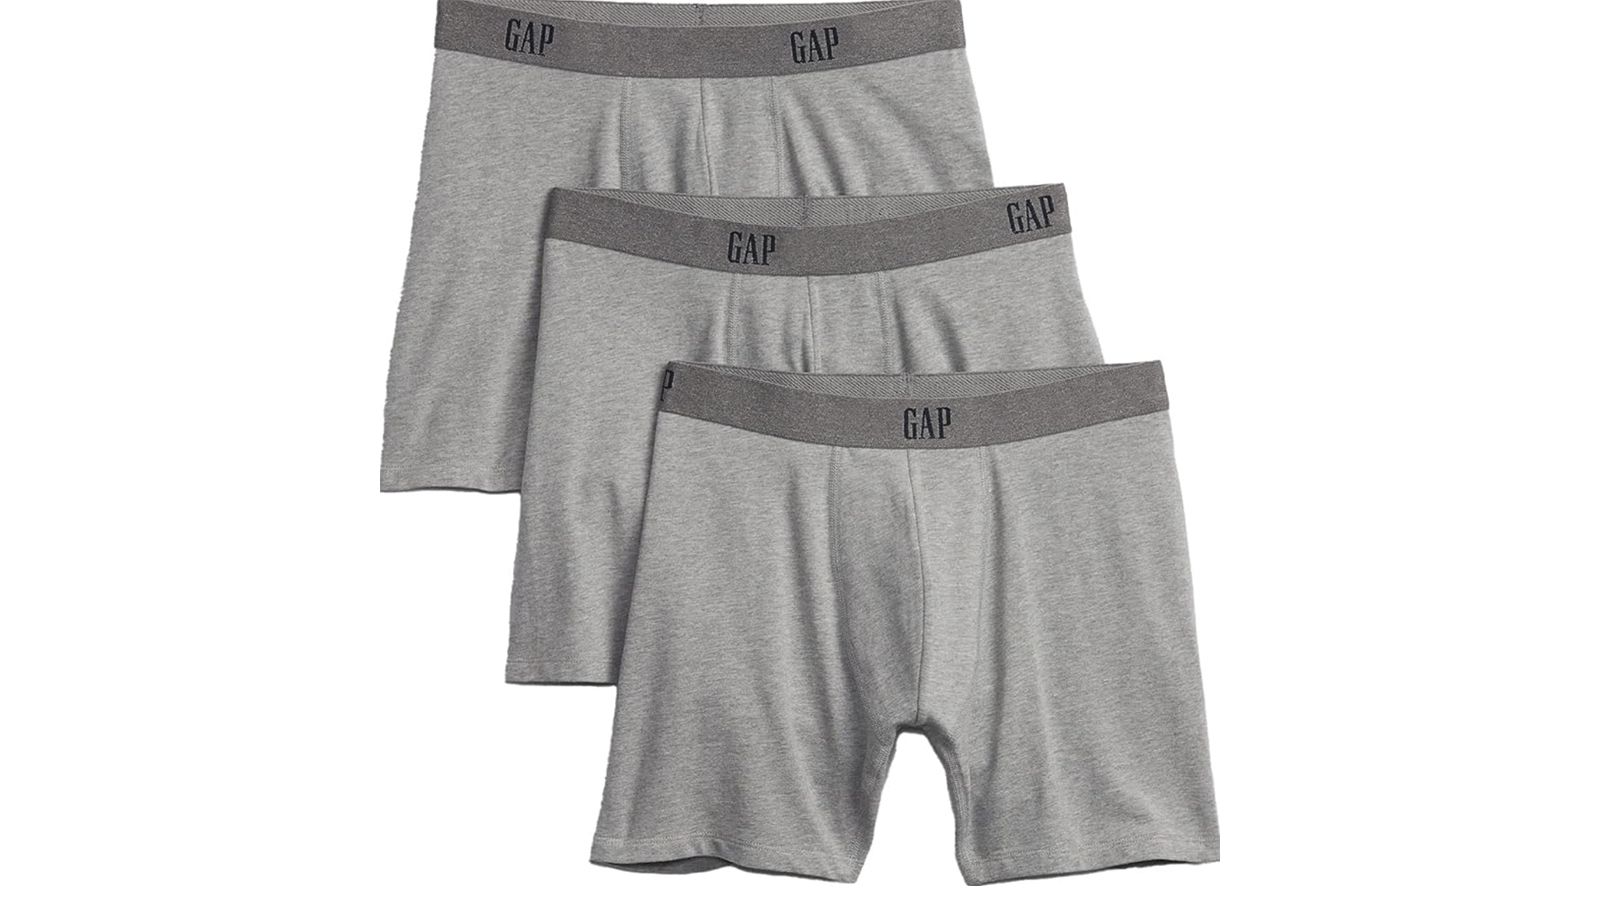 GAP Boxer Shorts 3 Pair Men's LARGE - Blue / Pink / Gingham Boxers